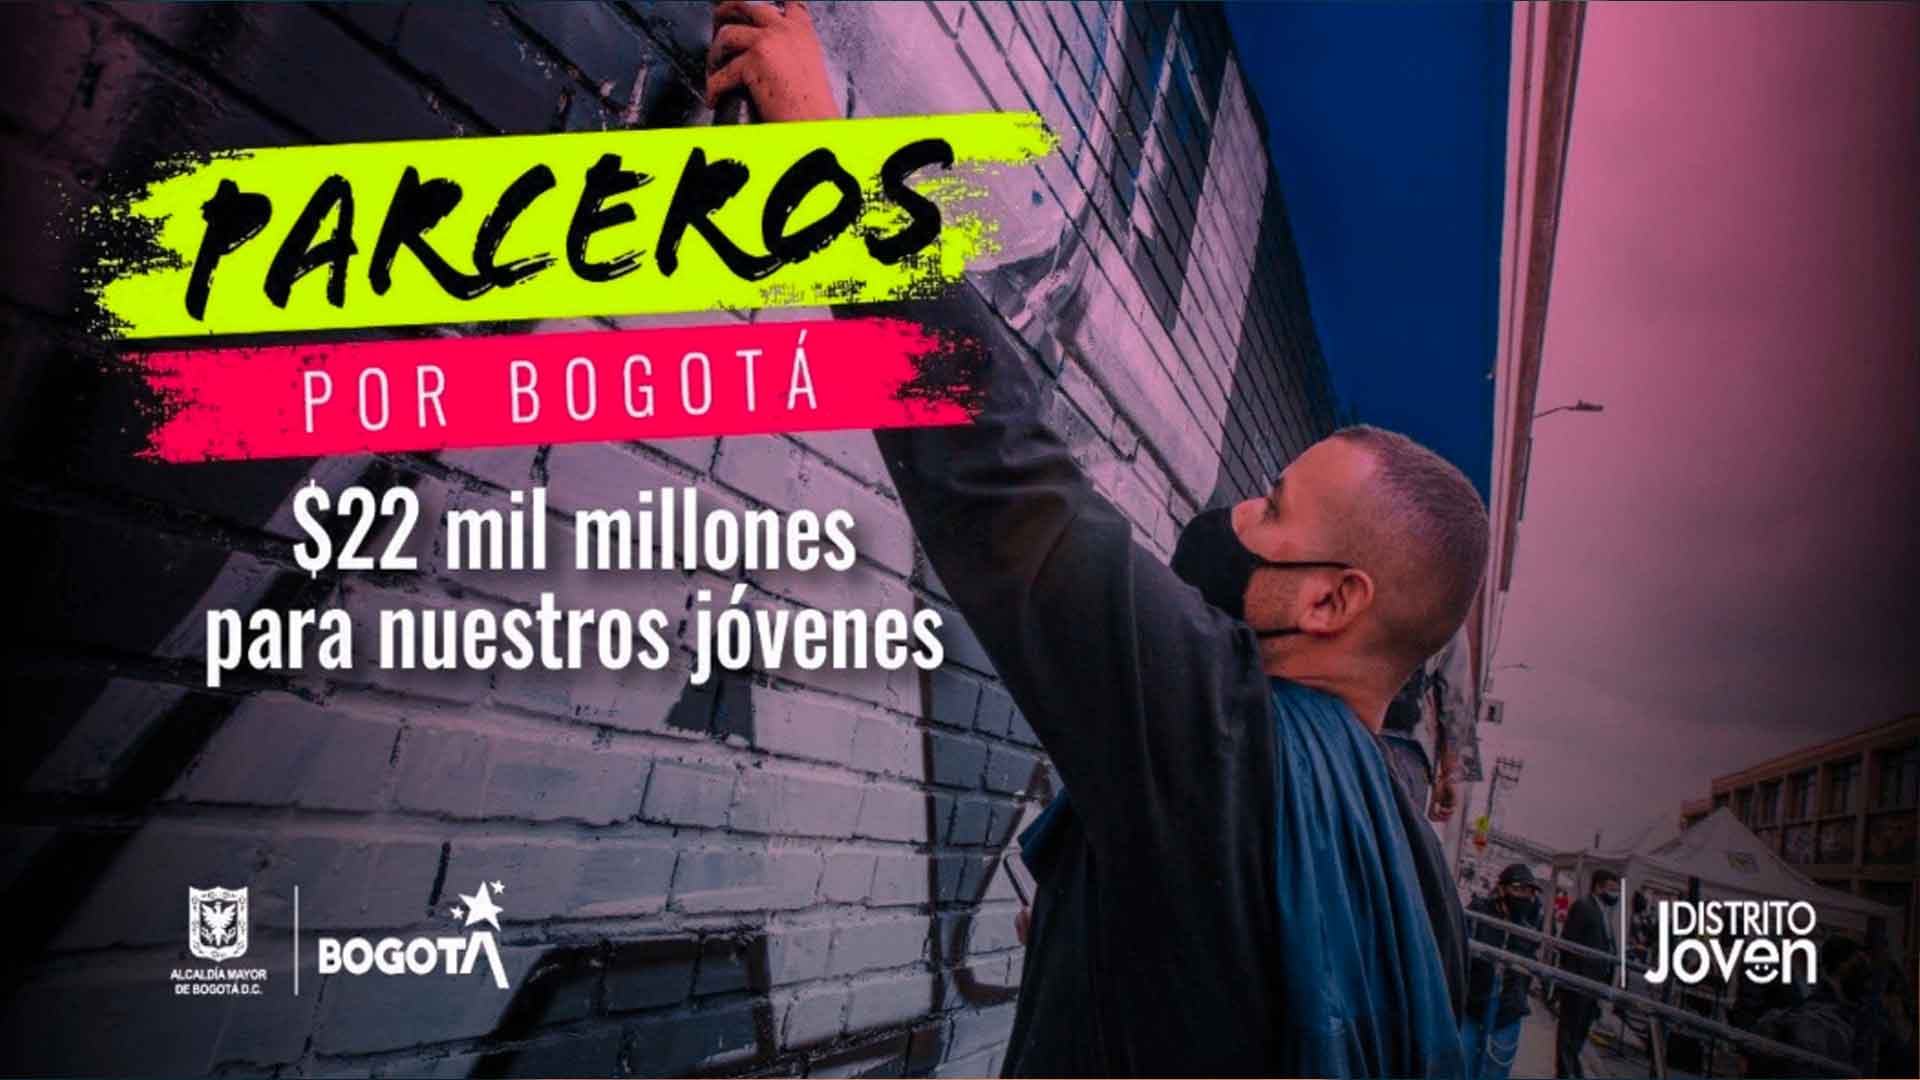 'Parceros por Bogotá' cierra inscripciónes el 31 de enero